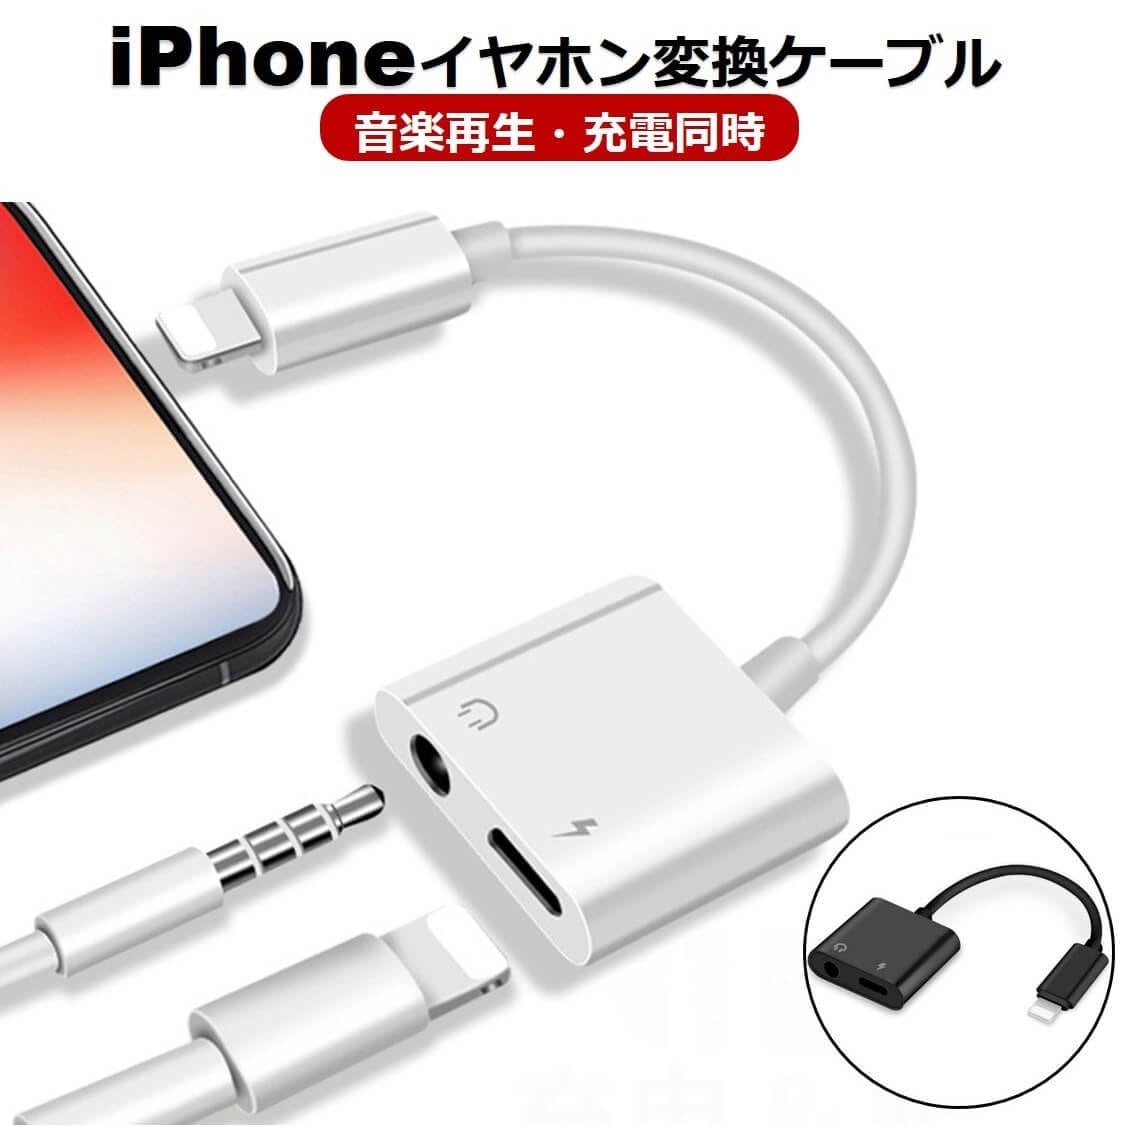 イヤホン 変換アダプタ iPhone 13 iOS15対応 イヤホン 変換ケーブル